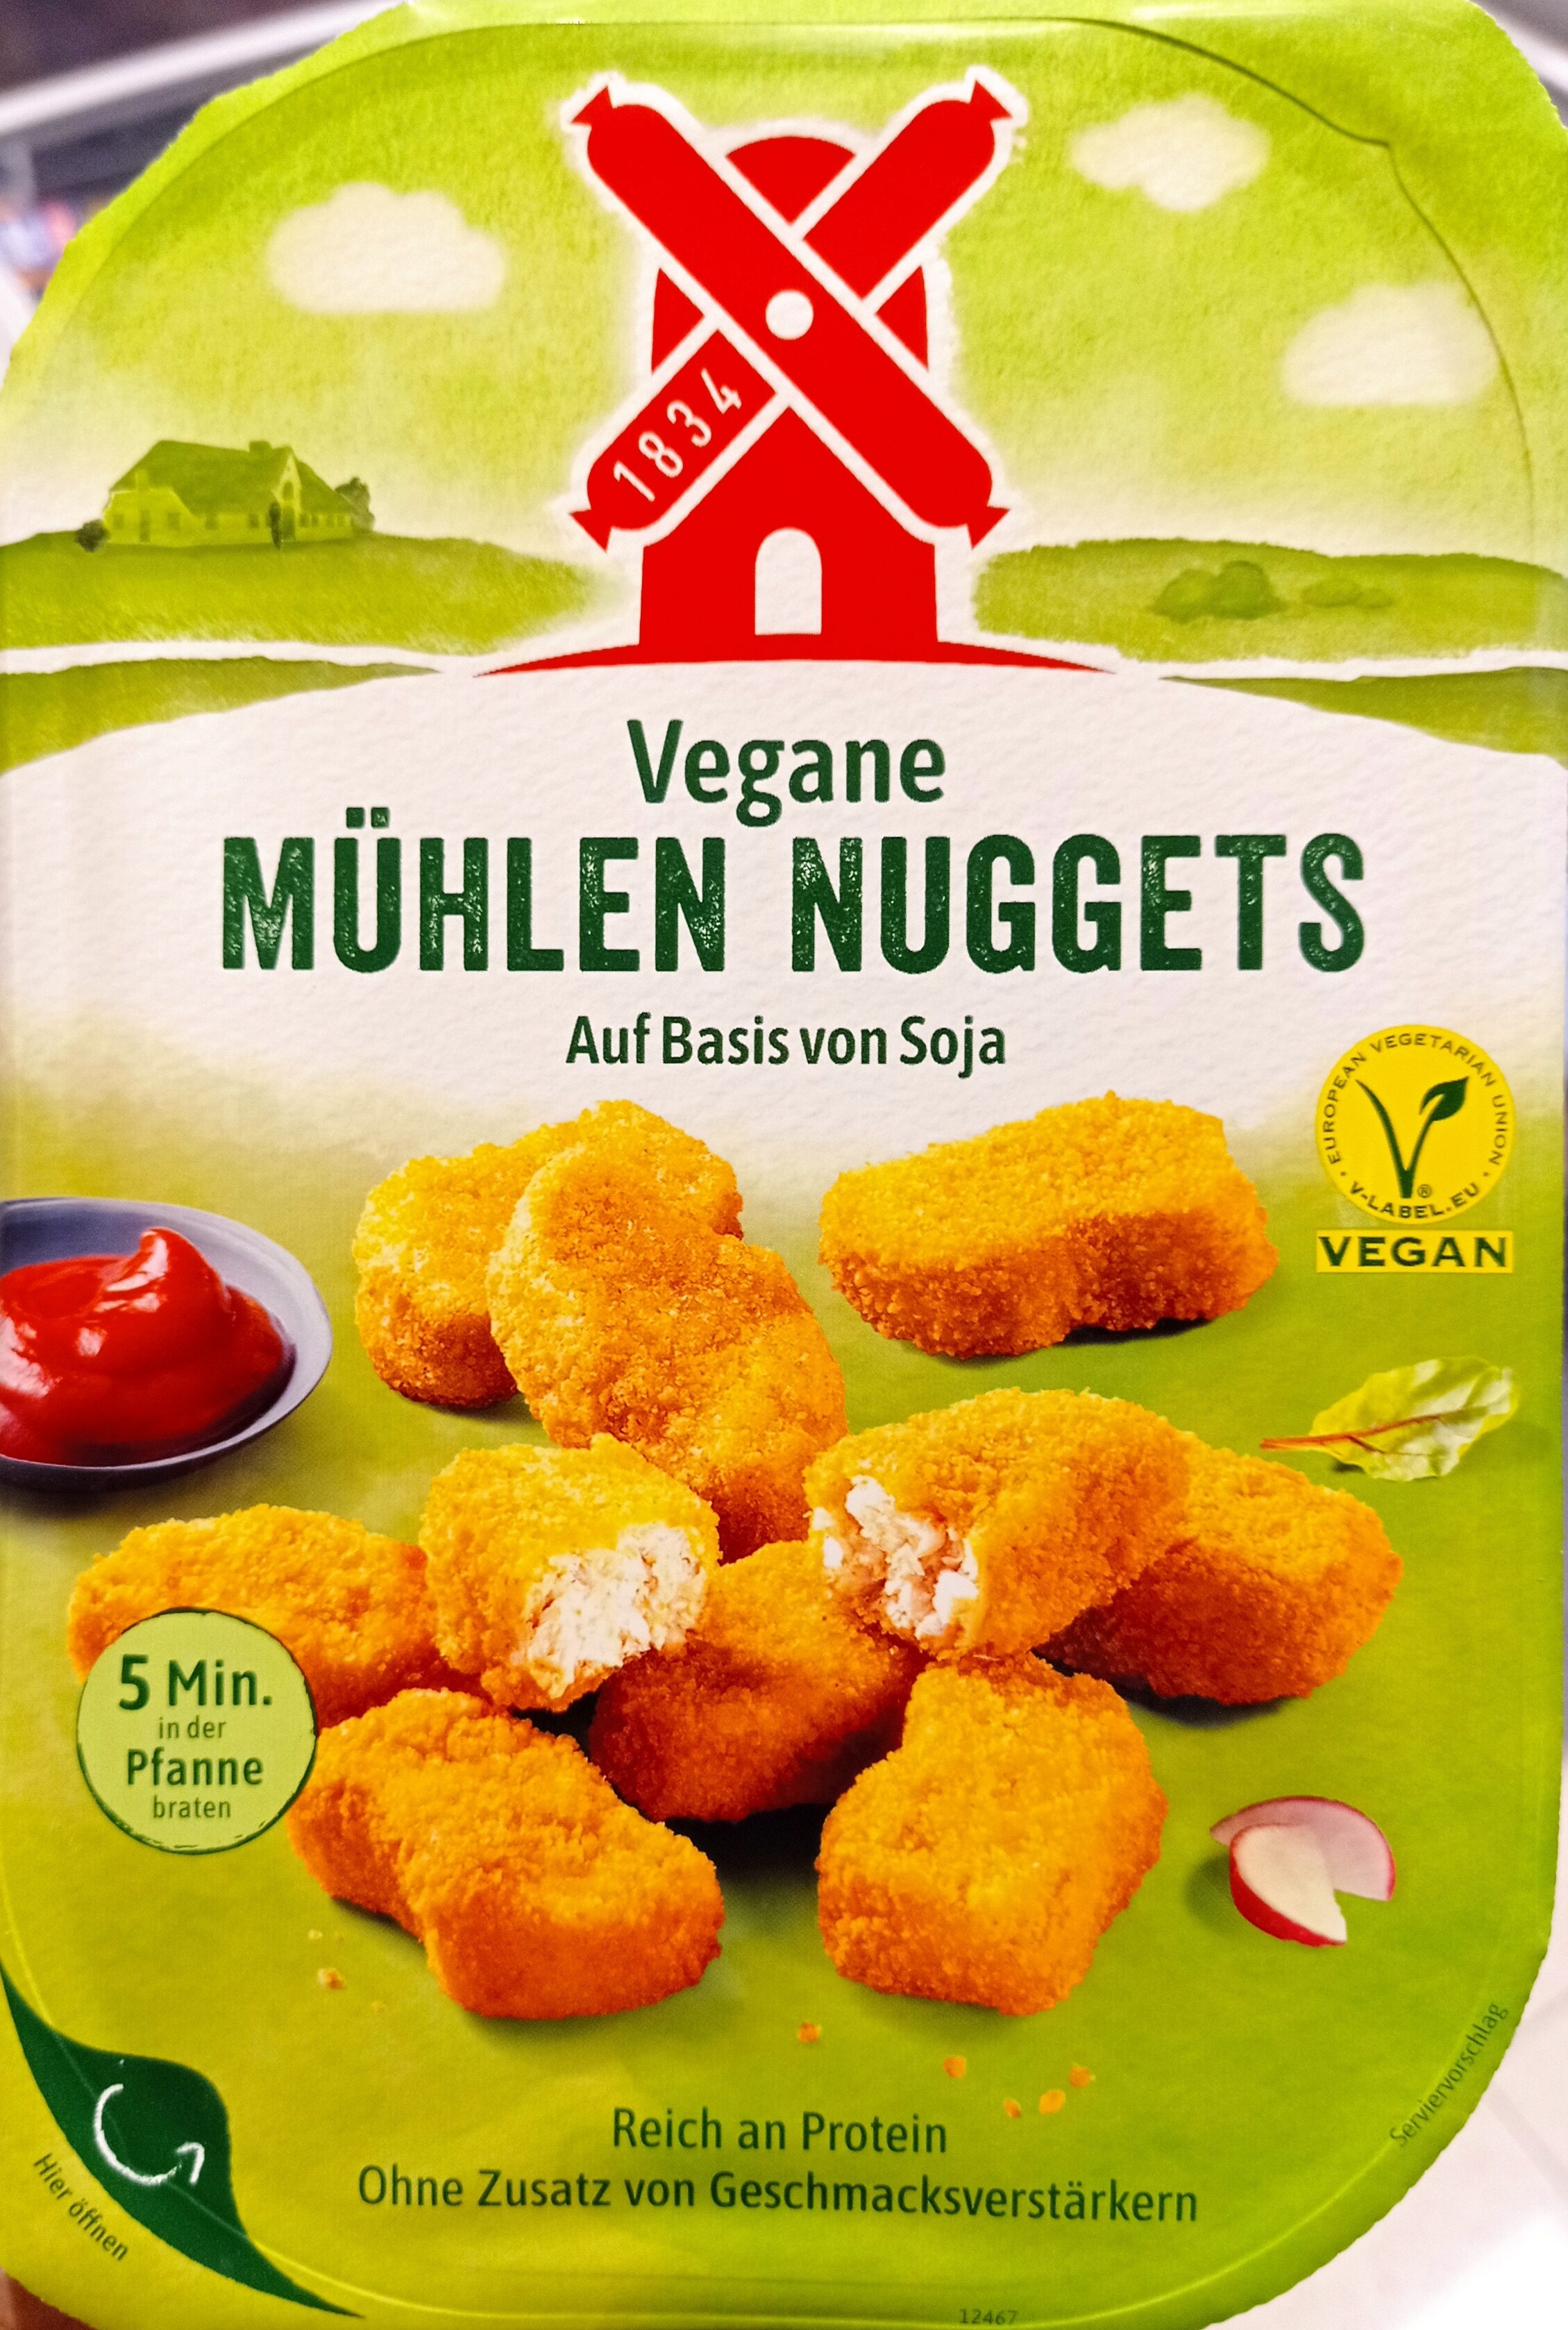 Vegane Mühlen Nuggets Klassisch - Product - de